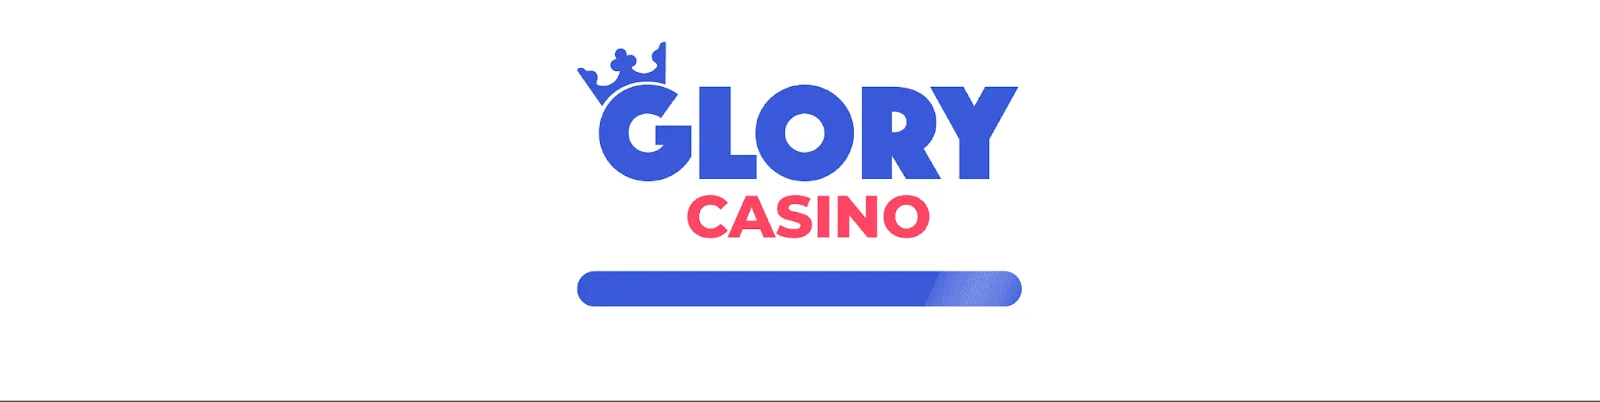 Glory Casino apostas